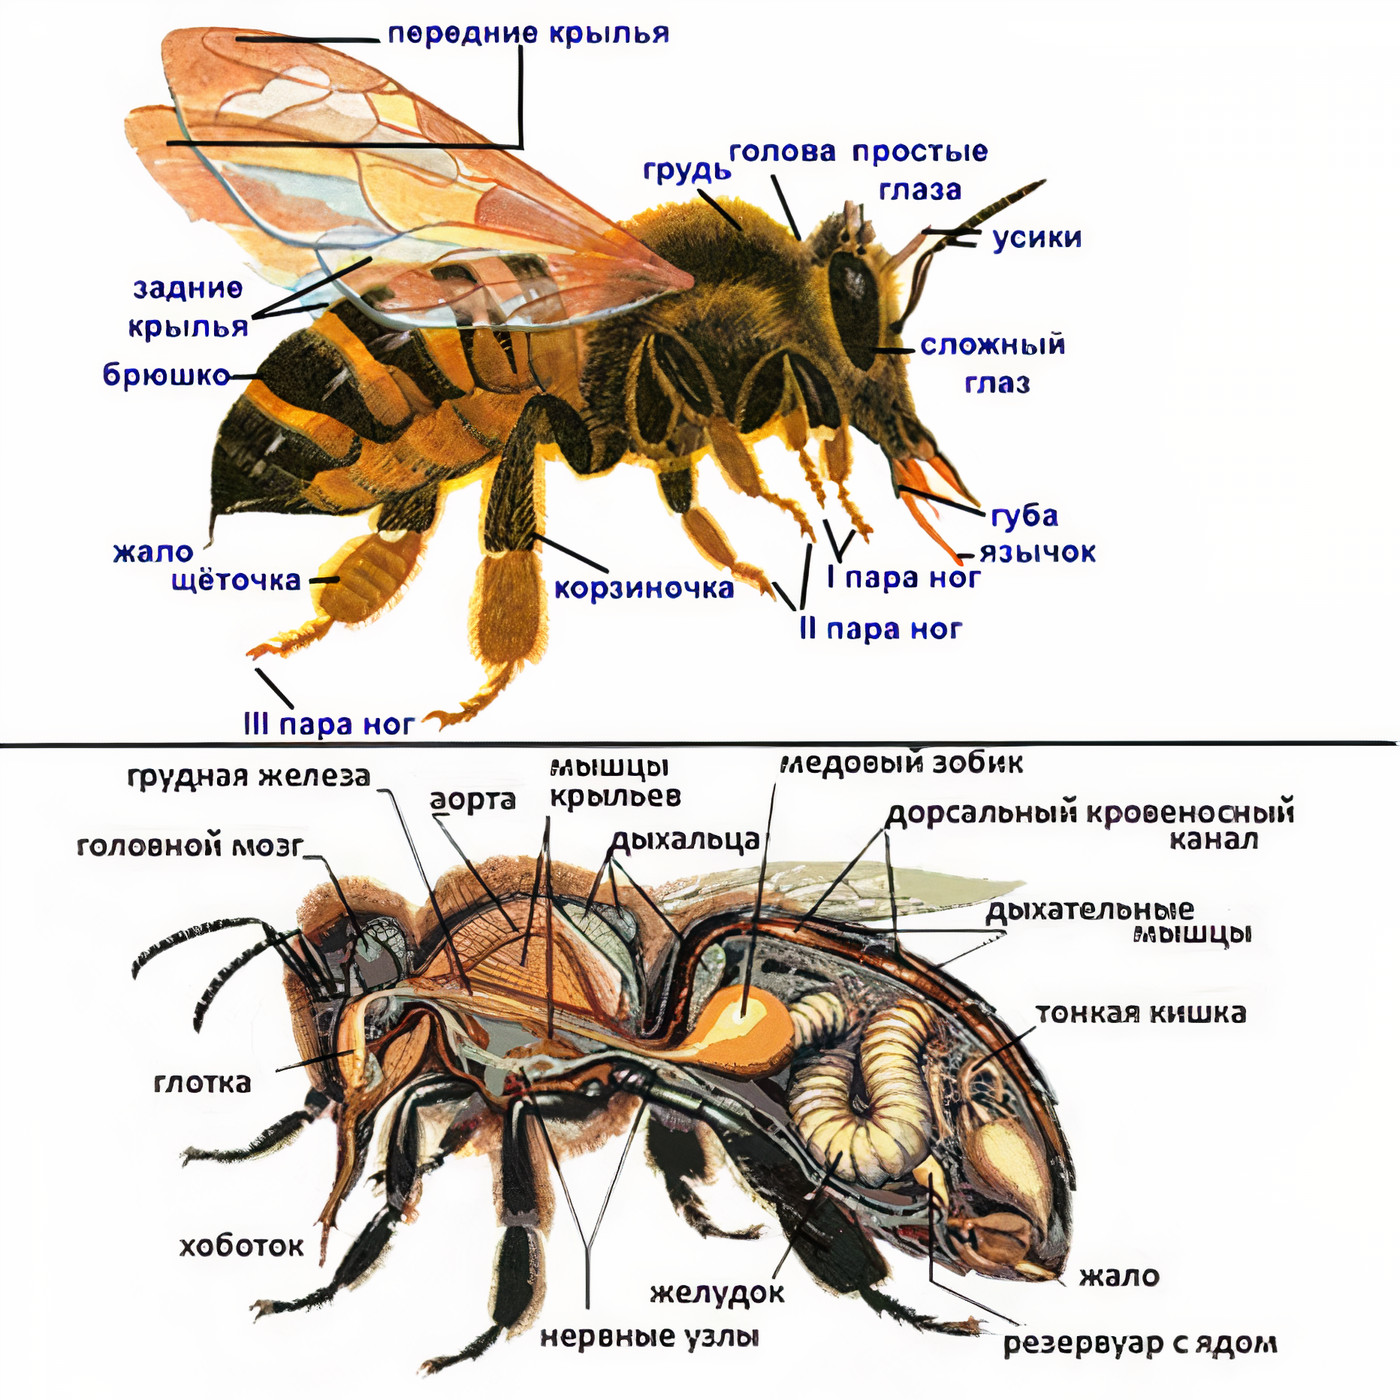 Строение рабочей пчелы.